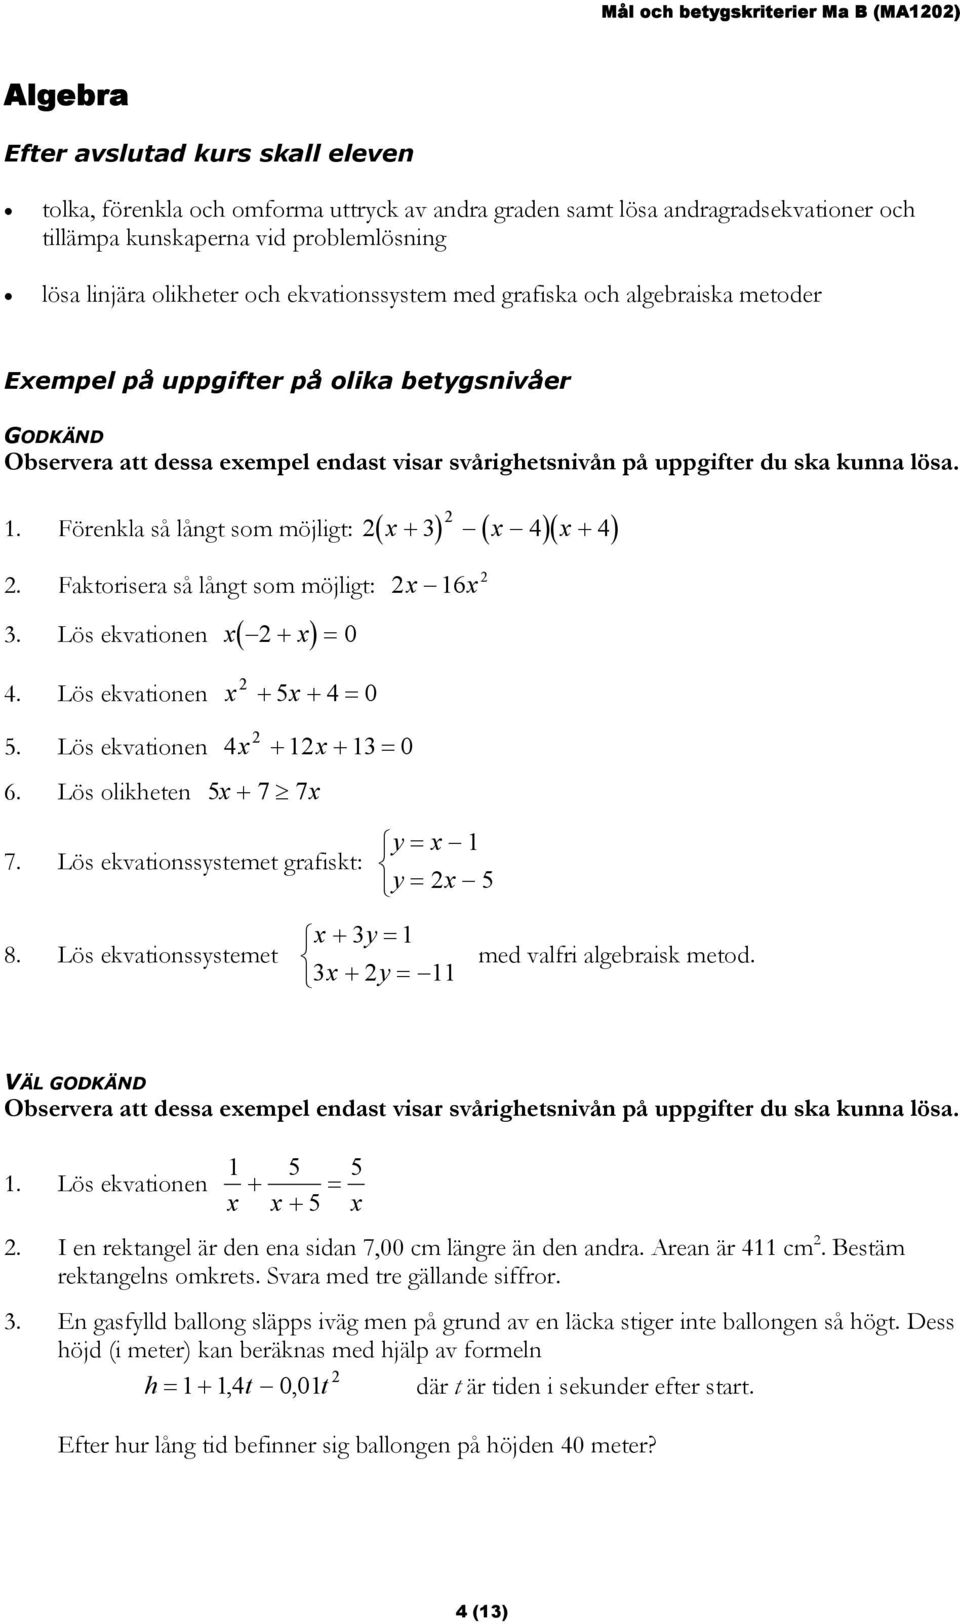 Faktorisera så långt som möjligt: x 16x 3. Lös ekvationen x( x) + = 0 4. Lös ekvationen x + 5x + 4=0 5. Lös ekvationen 4x + 1x + 13= 0 6. Lös olikheten 5x + 7 7x 7. Lös ekvationssystemet grafiskt: 8.